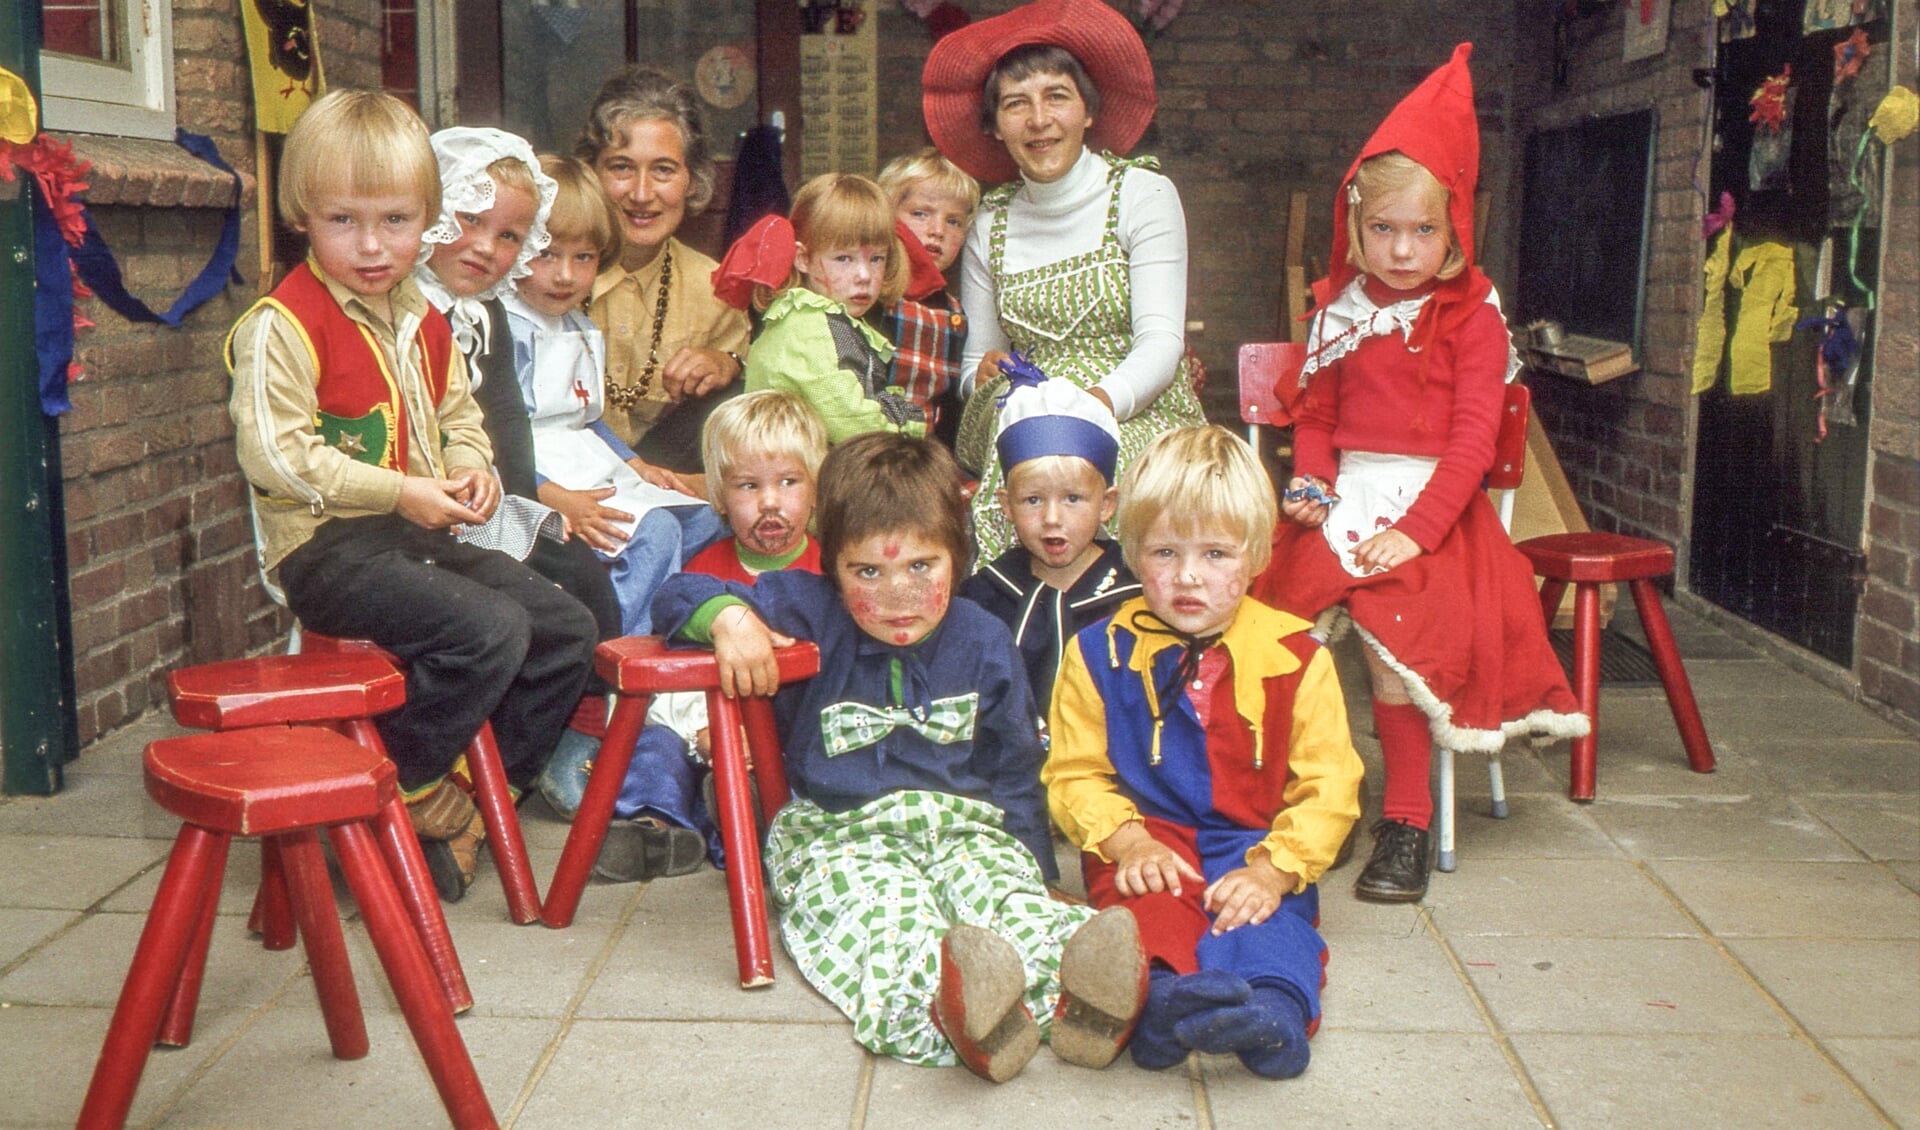 De kinderen van Hummeloord waren geschminkt en verkleed tijdens feesten, ’s zomers, in de grote tuin. Juf Arendsen droeg een rode hoed. Eigen foto